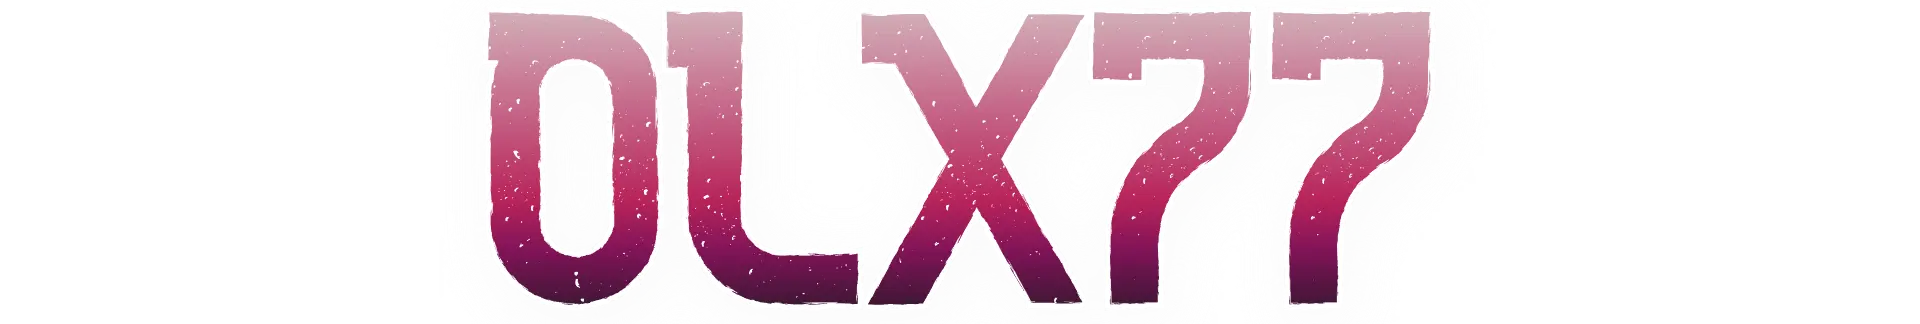 OLX77